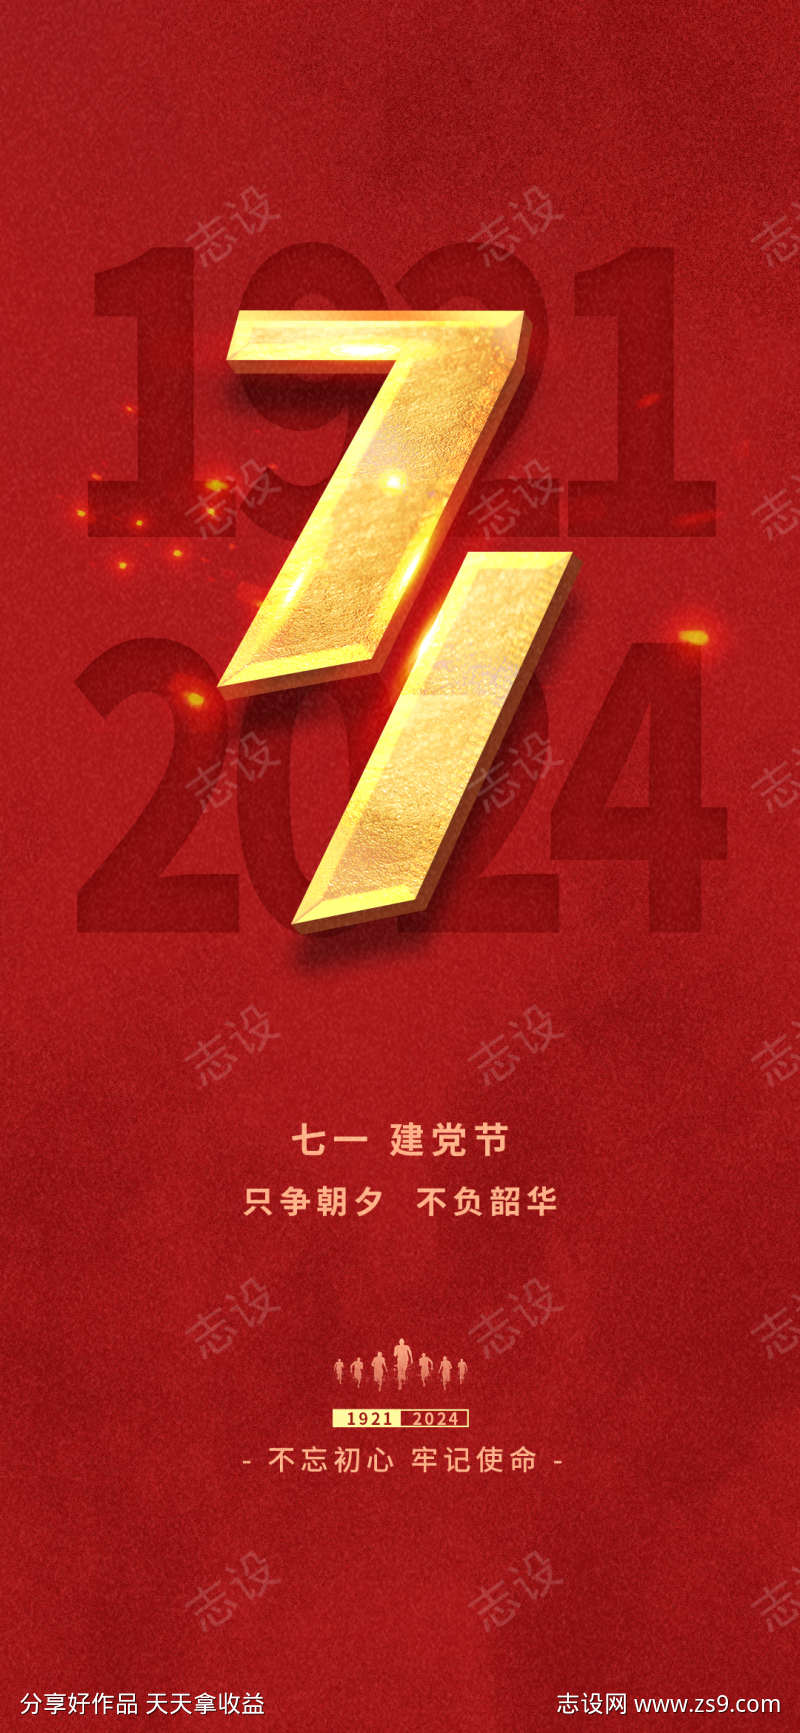 七一建党党建庆祝周年节日海报